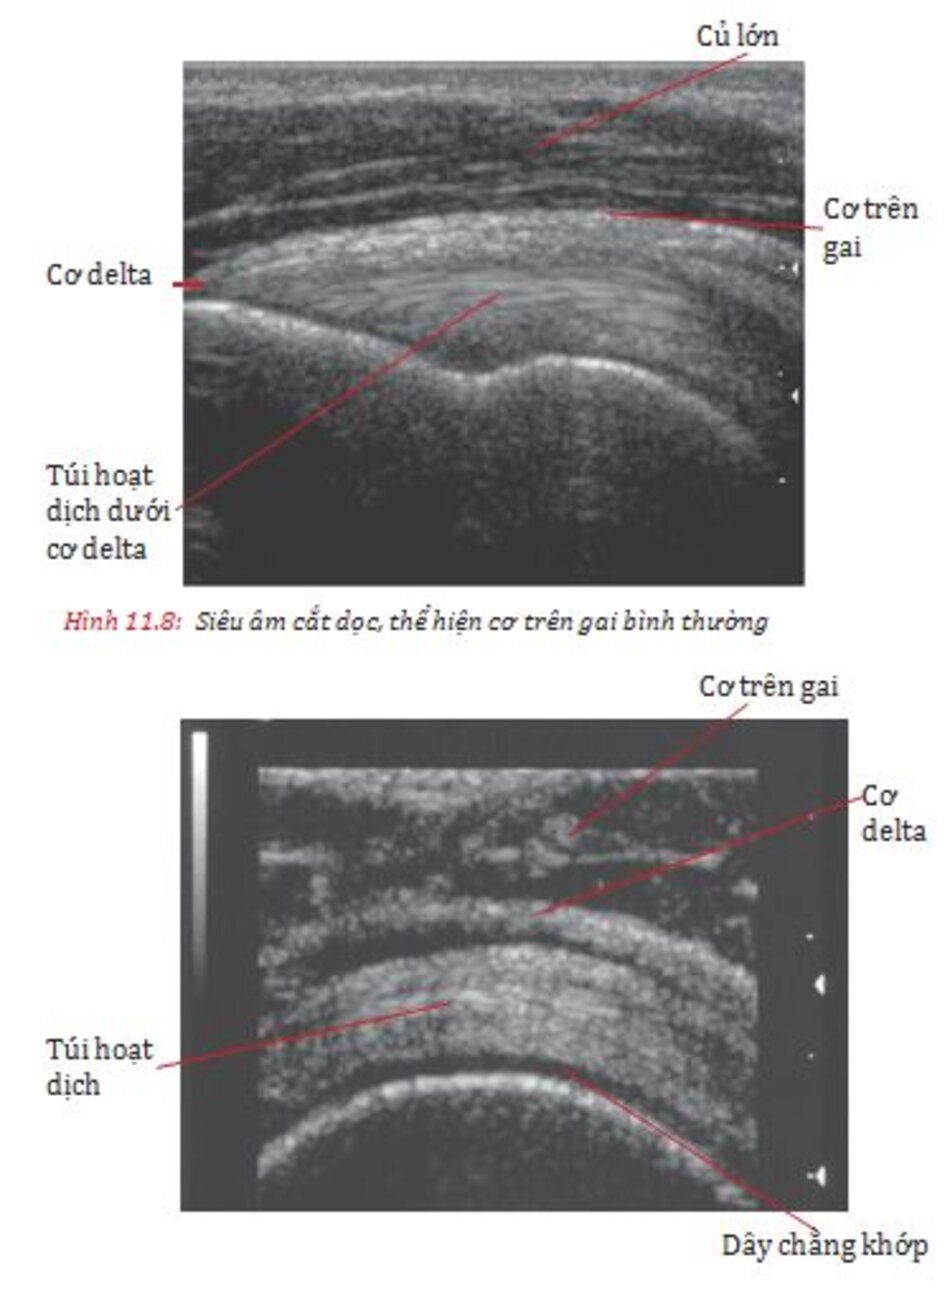 Hình 11.12: MRI thì T2 mặt phẳng trán cho thấy rách toàn bộ gân cơ trên gai và Hình 11.13:MRI thì T2 mặt phẳng trán cho thấy rách toàn bộ gân cơ trên gai 